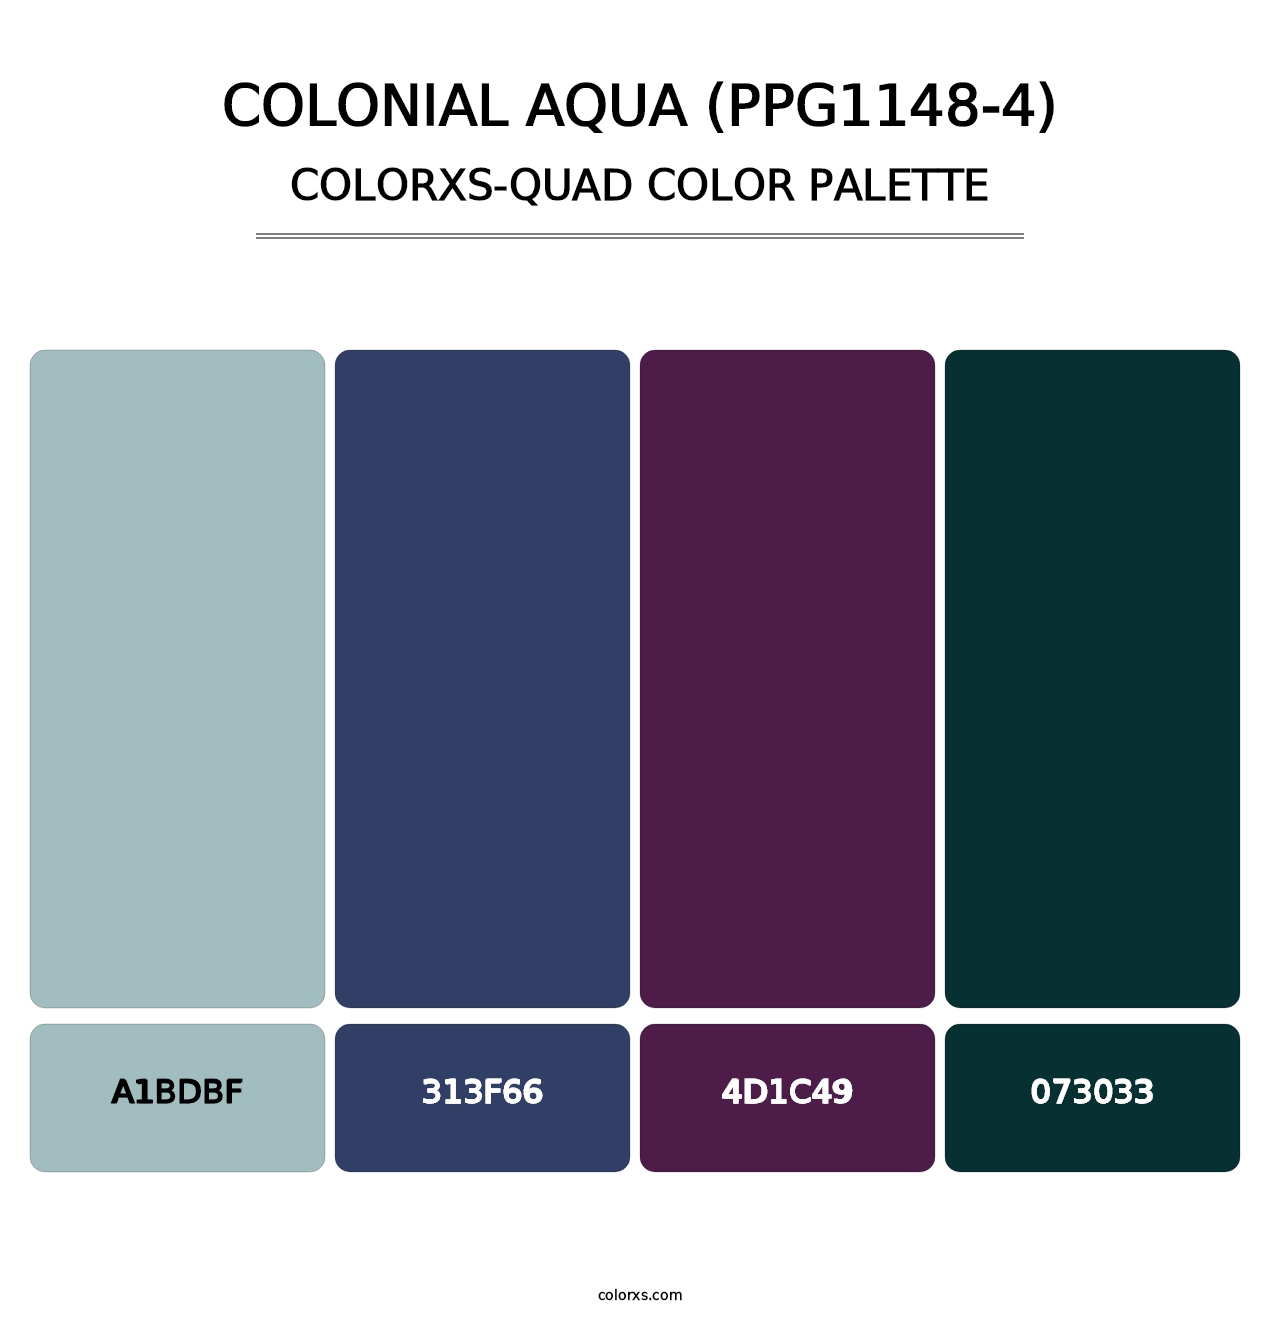 Colonial Aqua (PPG1148-4) - Colorxs Quad Palette